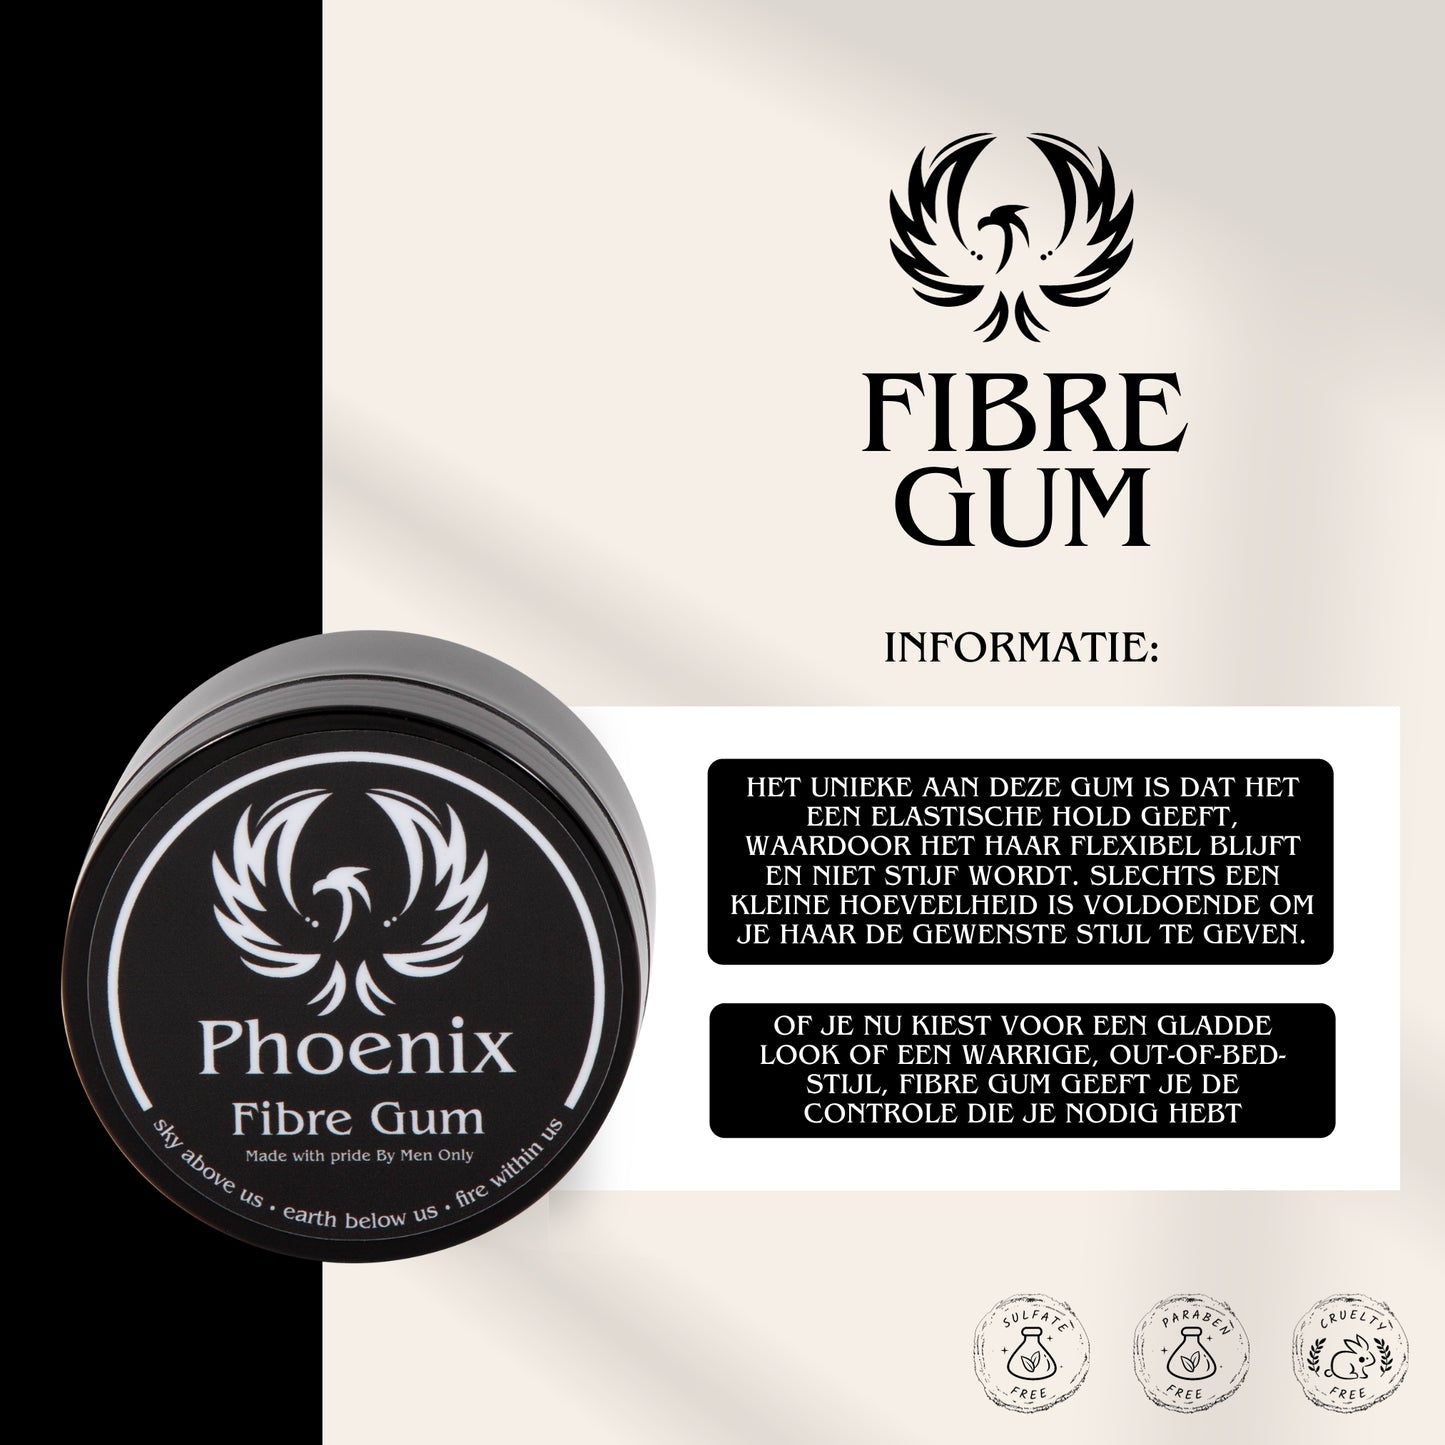 Phoenix Fibre Gum